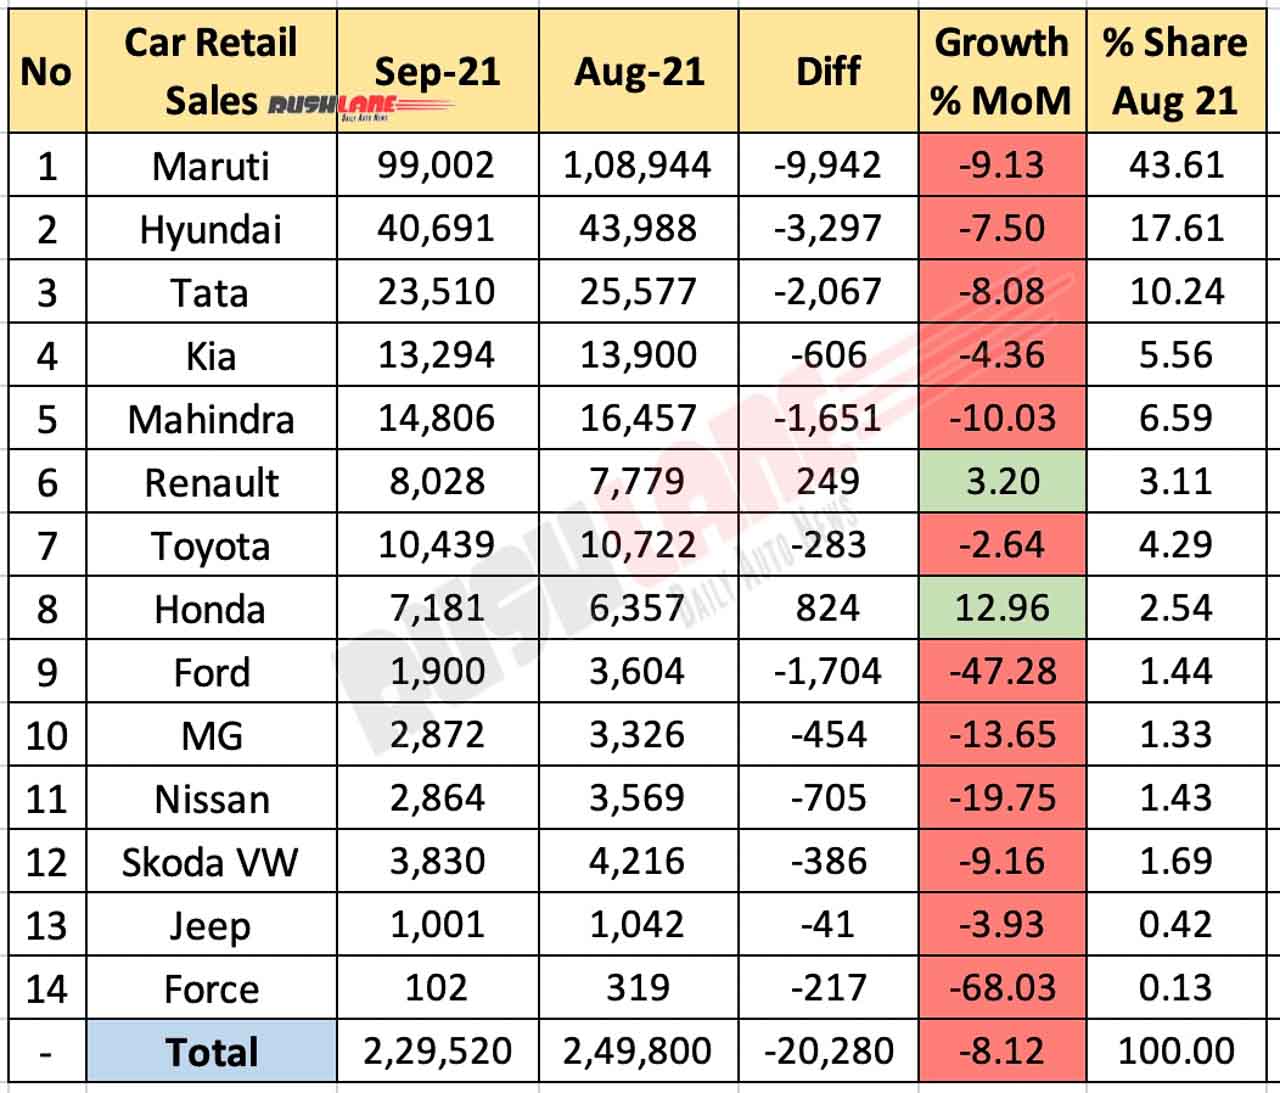 Car Retail Sales Sep 2021 vs Aug 2021 (MoM)